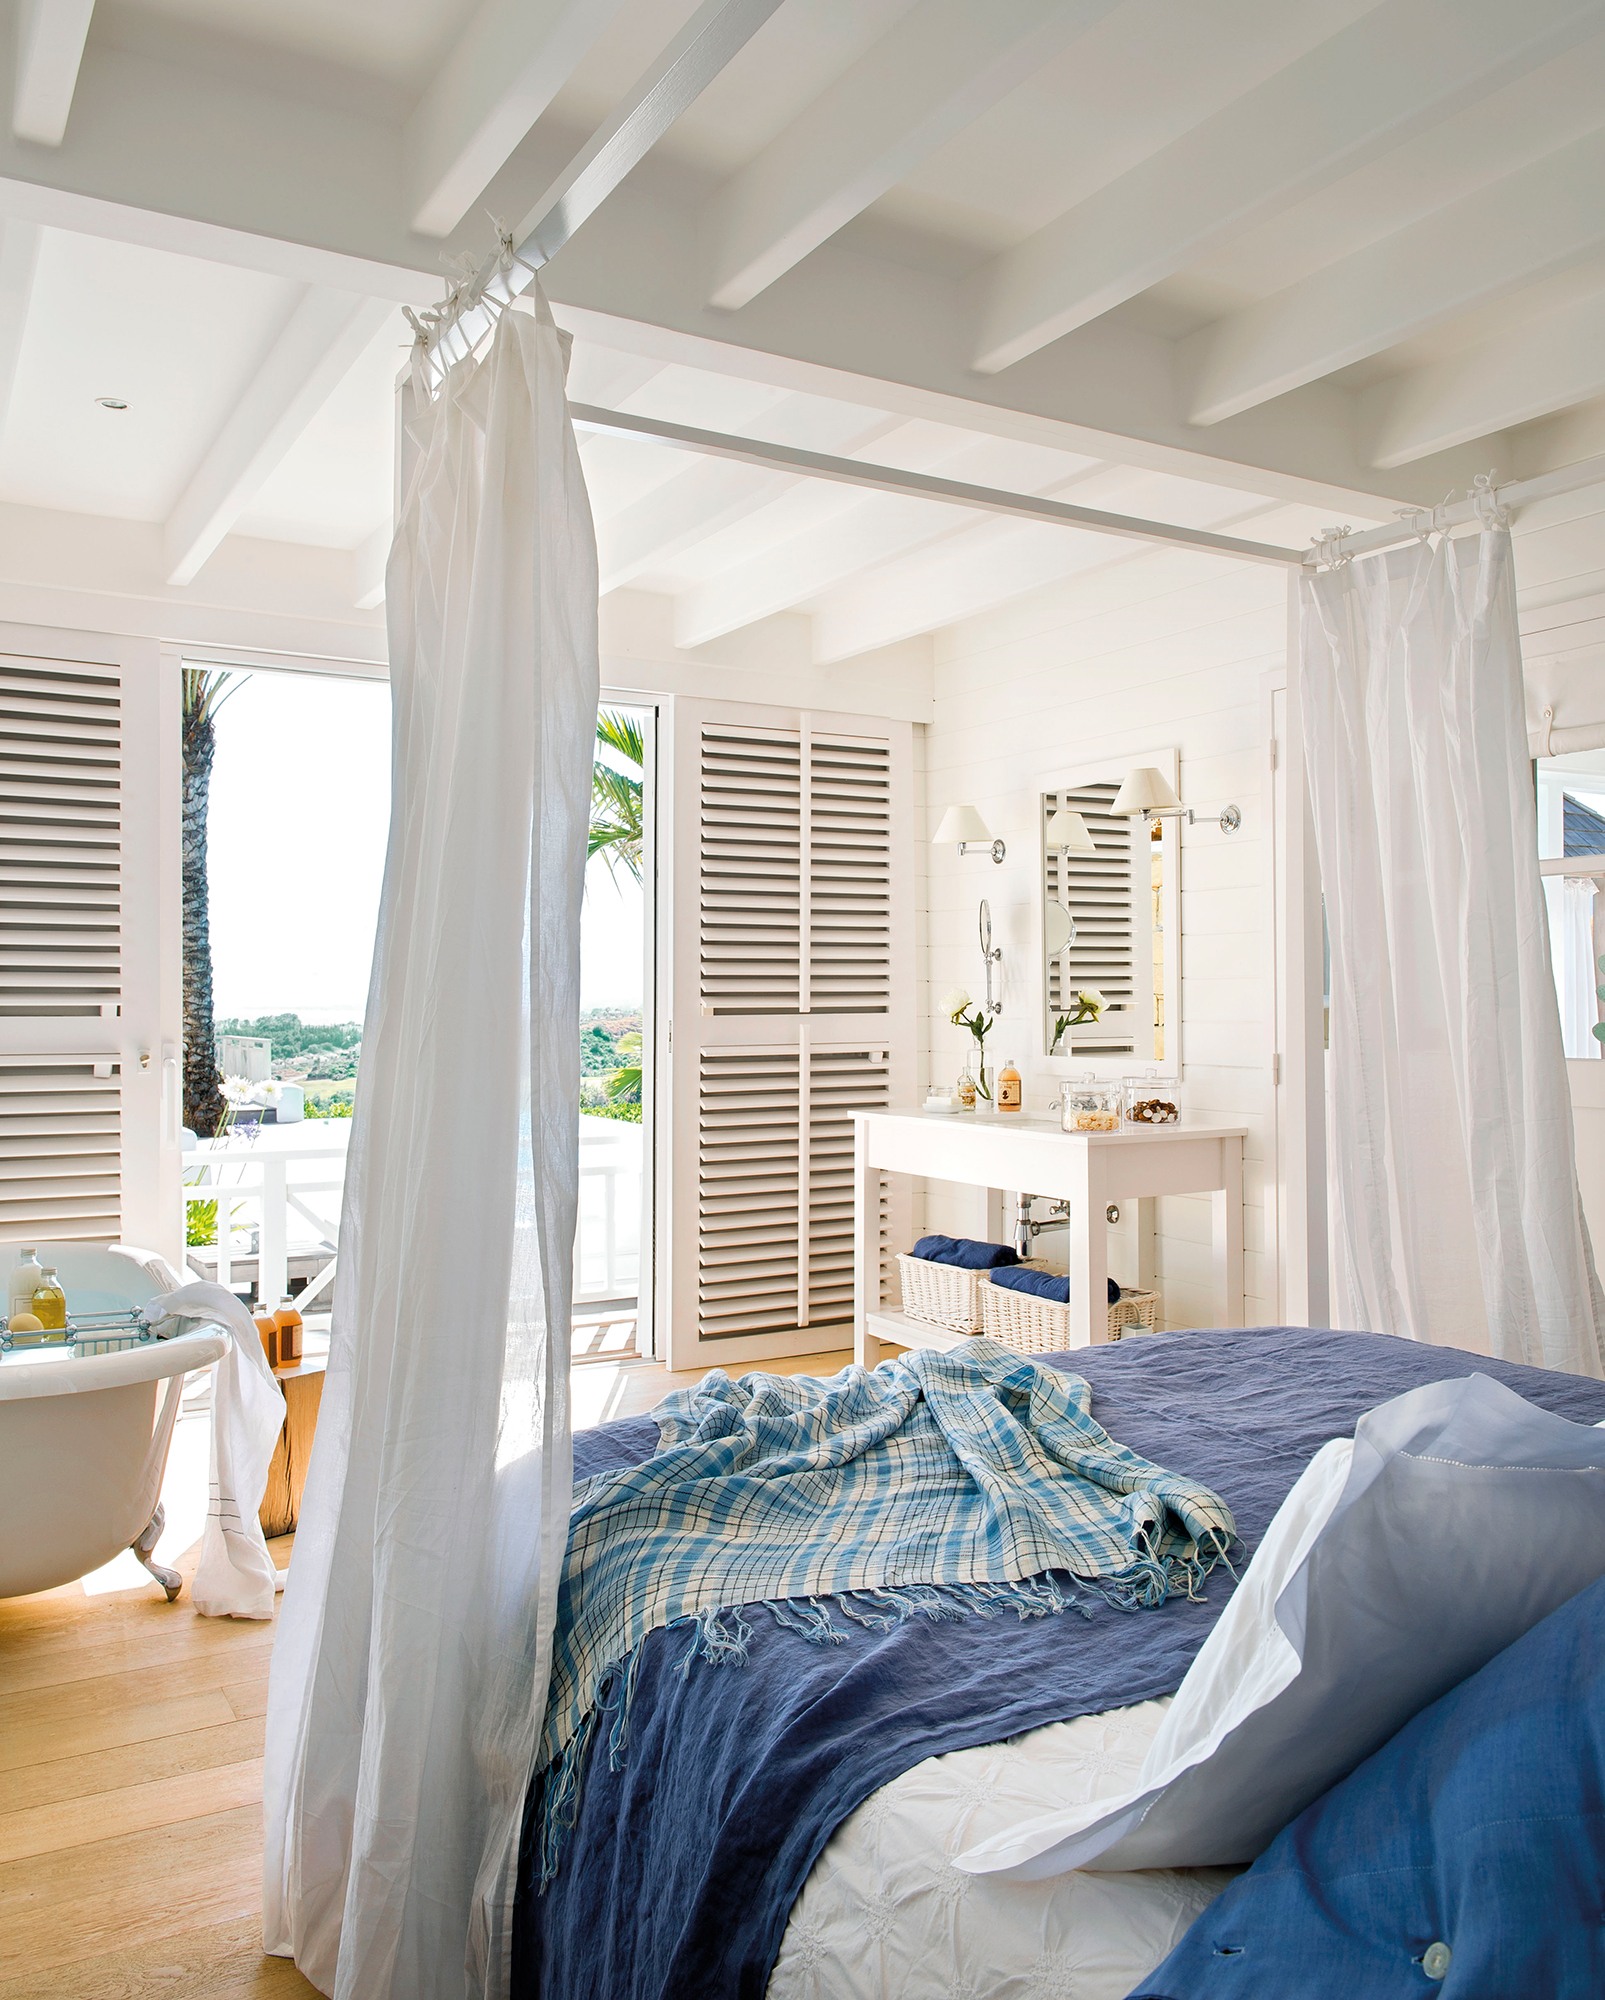 Dormitorio en blanco y detalles en azul con bañera con vistas al jardín_365839